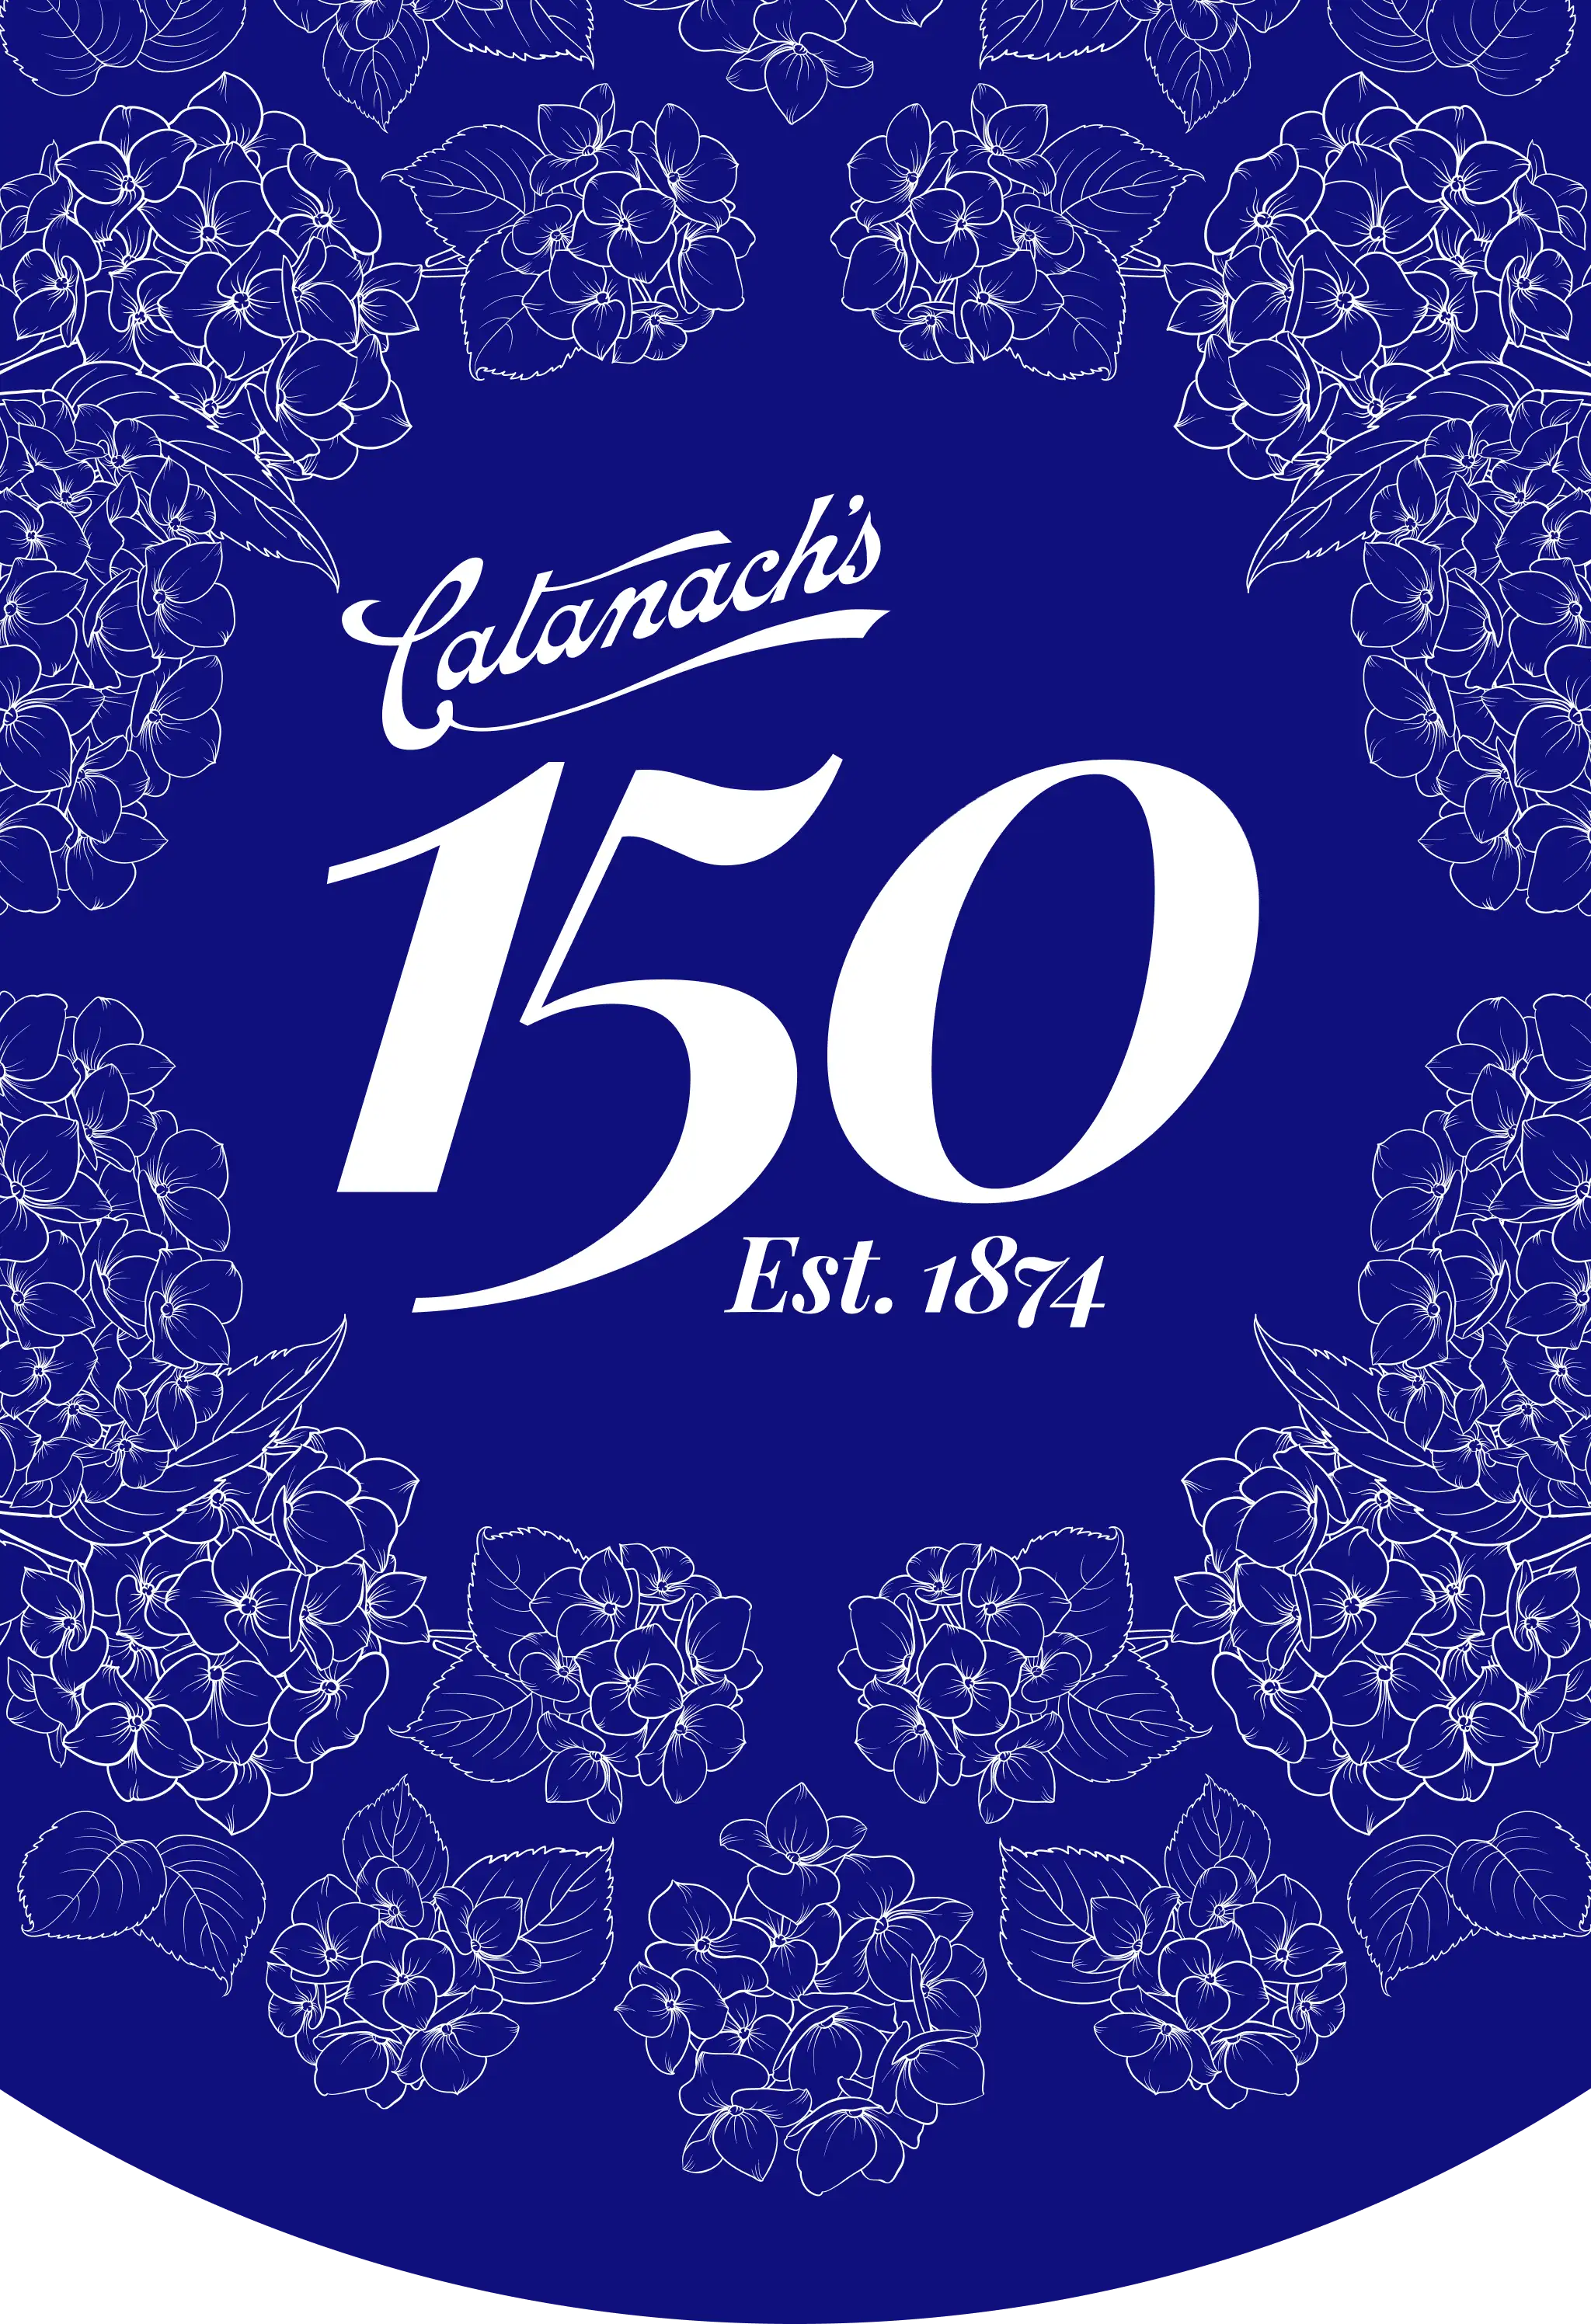 Catanach's 150 Years. 1874-2024